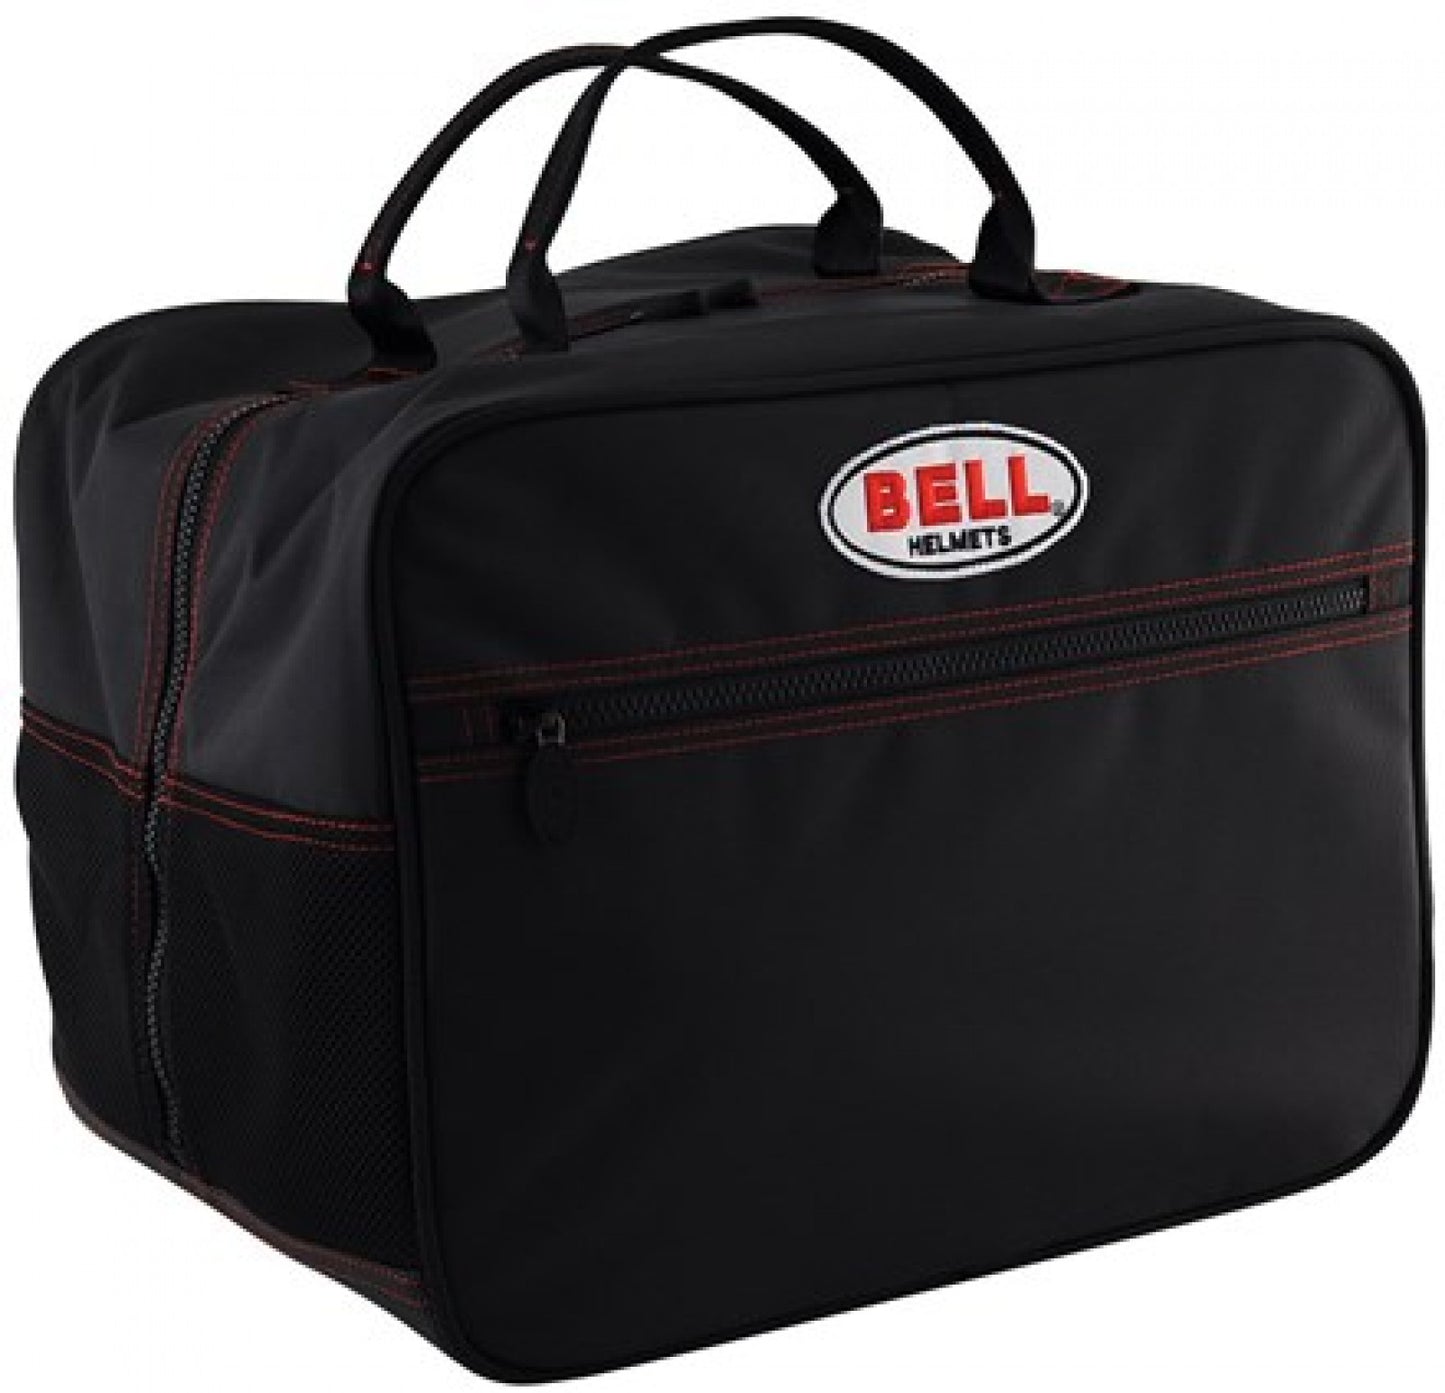 Bell HP Helmet Bag Black '2120001